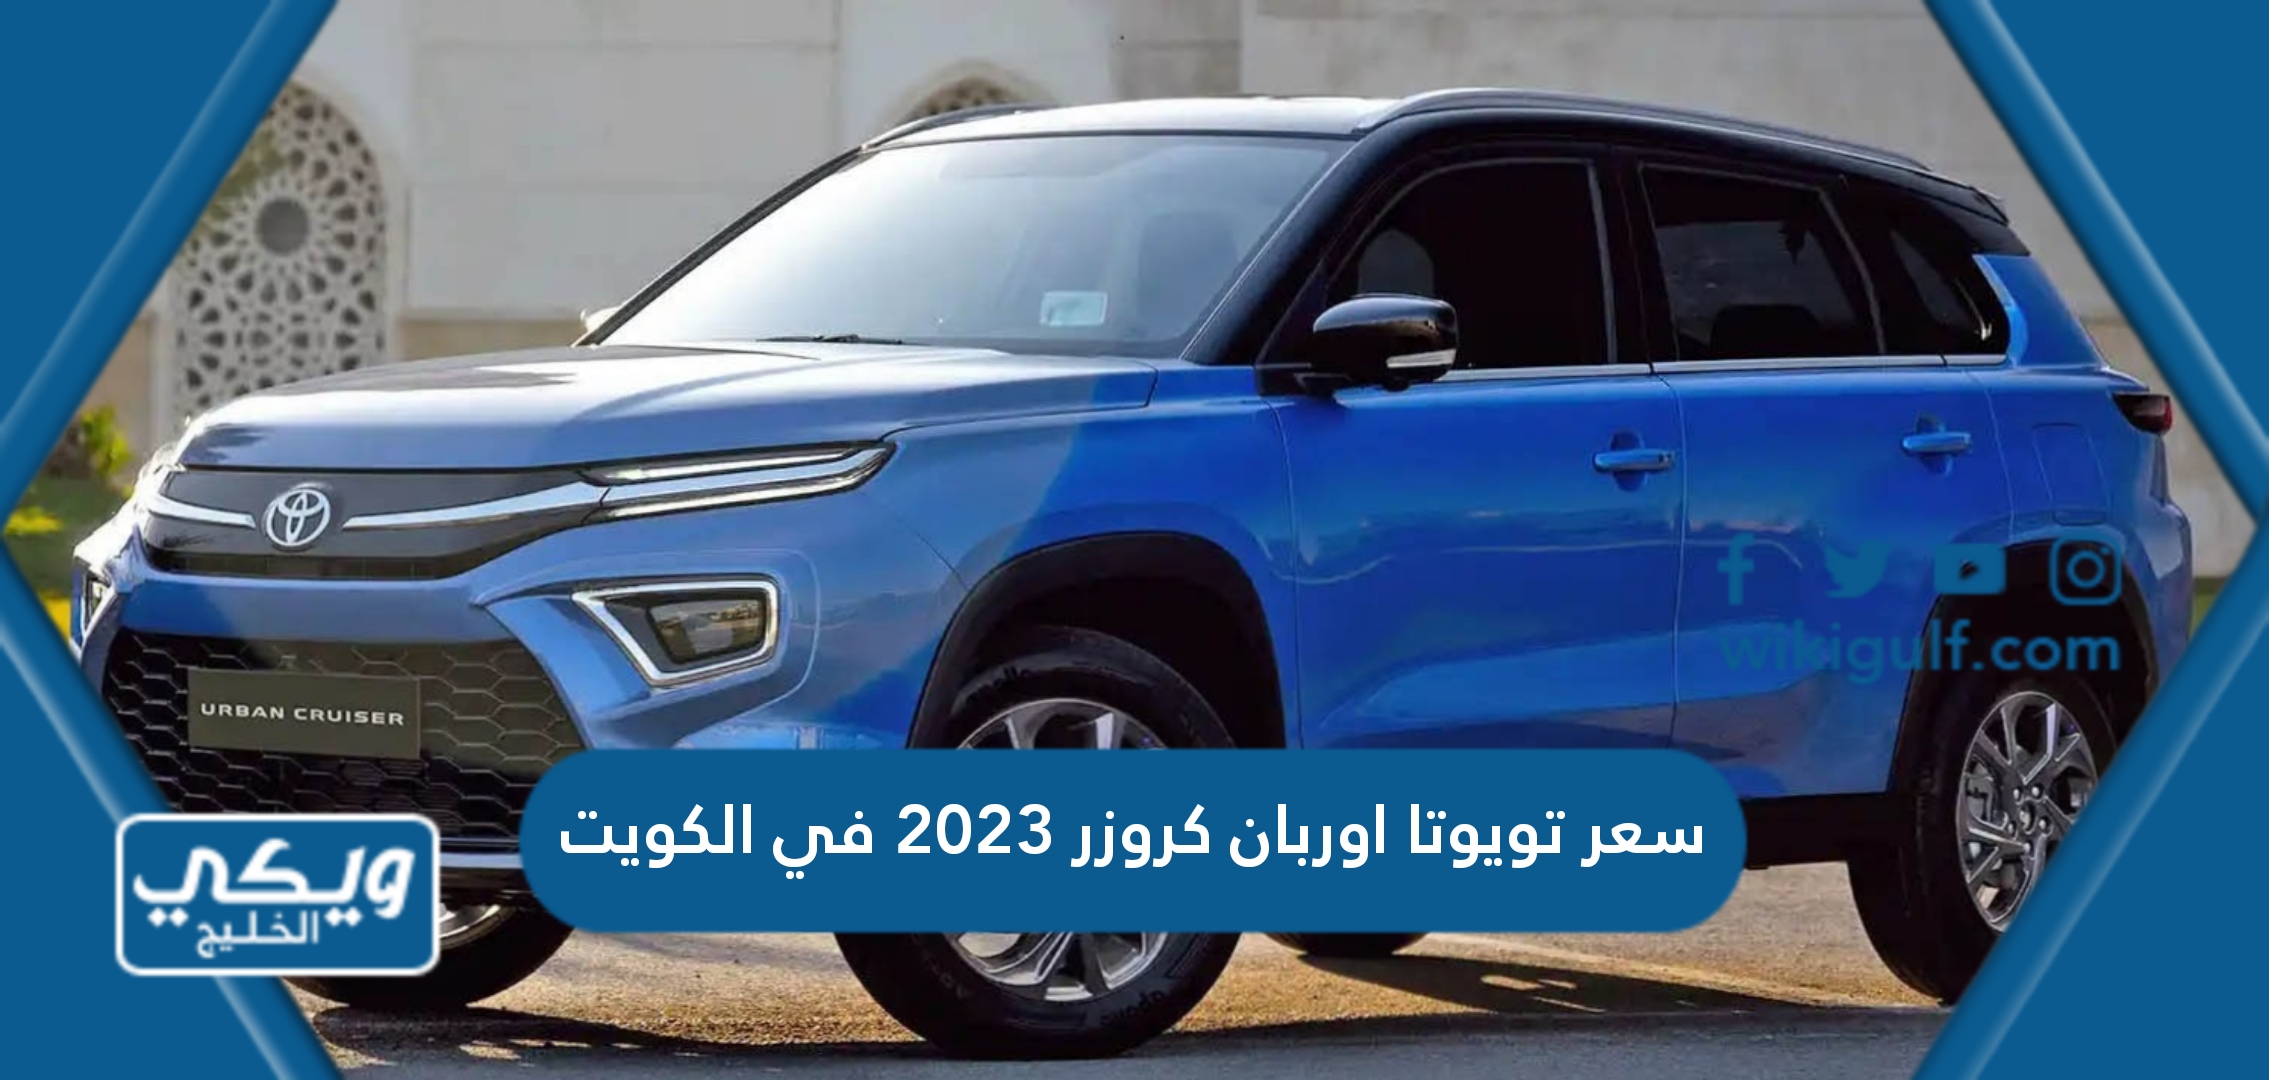 سعر تويوتا اوربان كروزر 2023 في الكويت